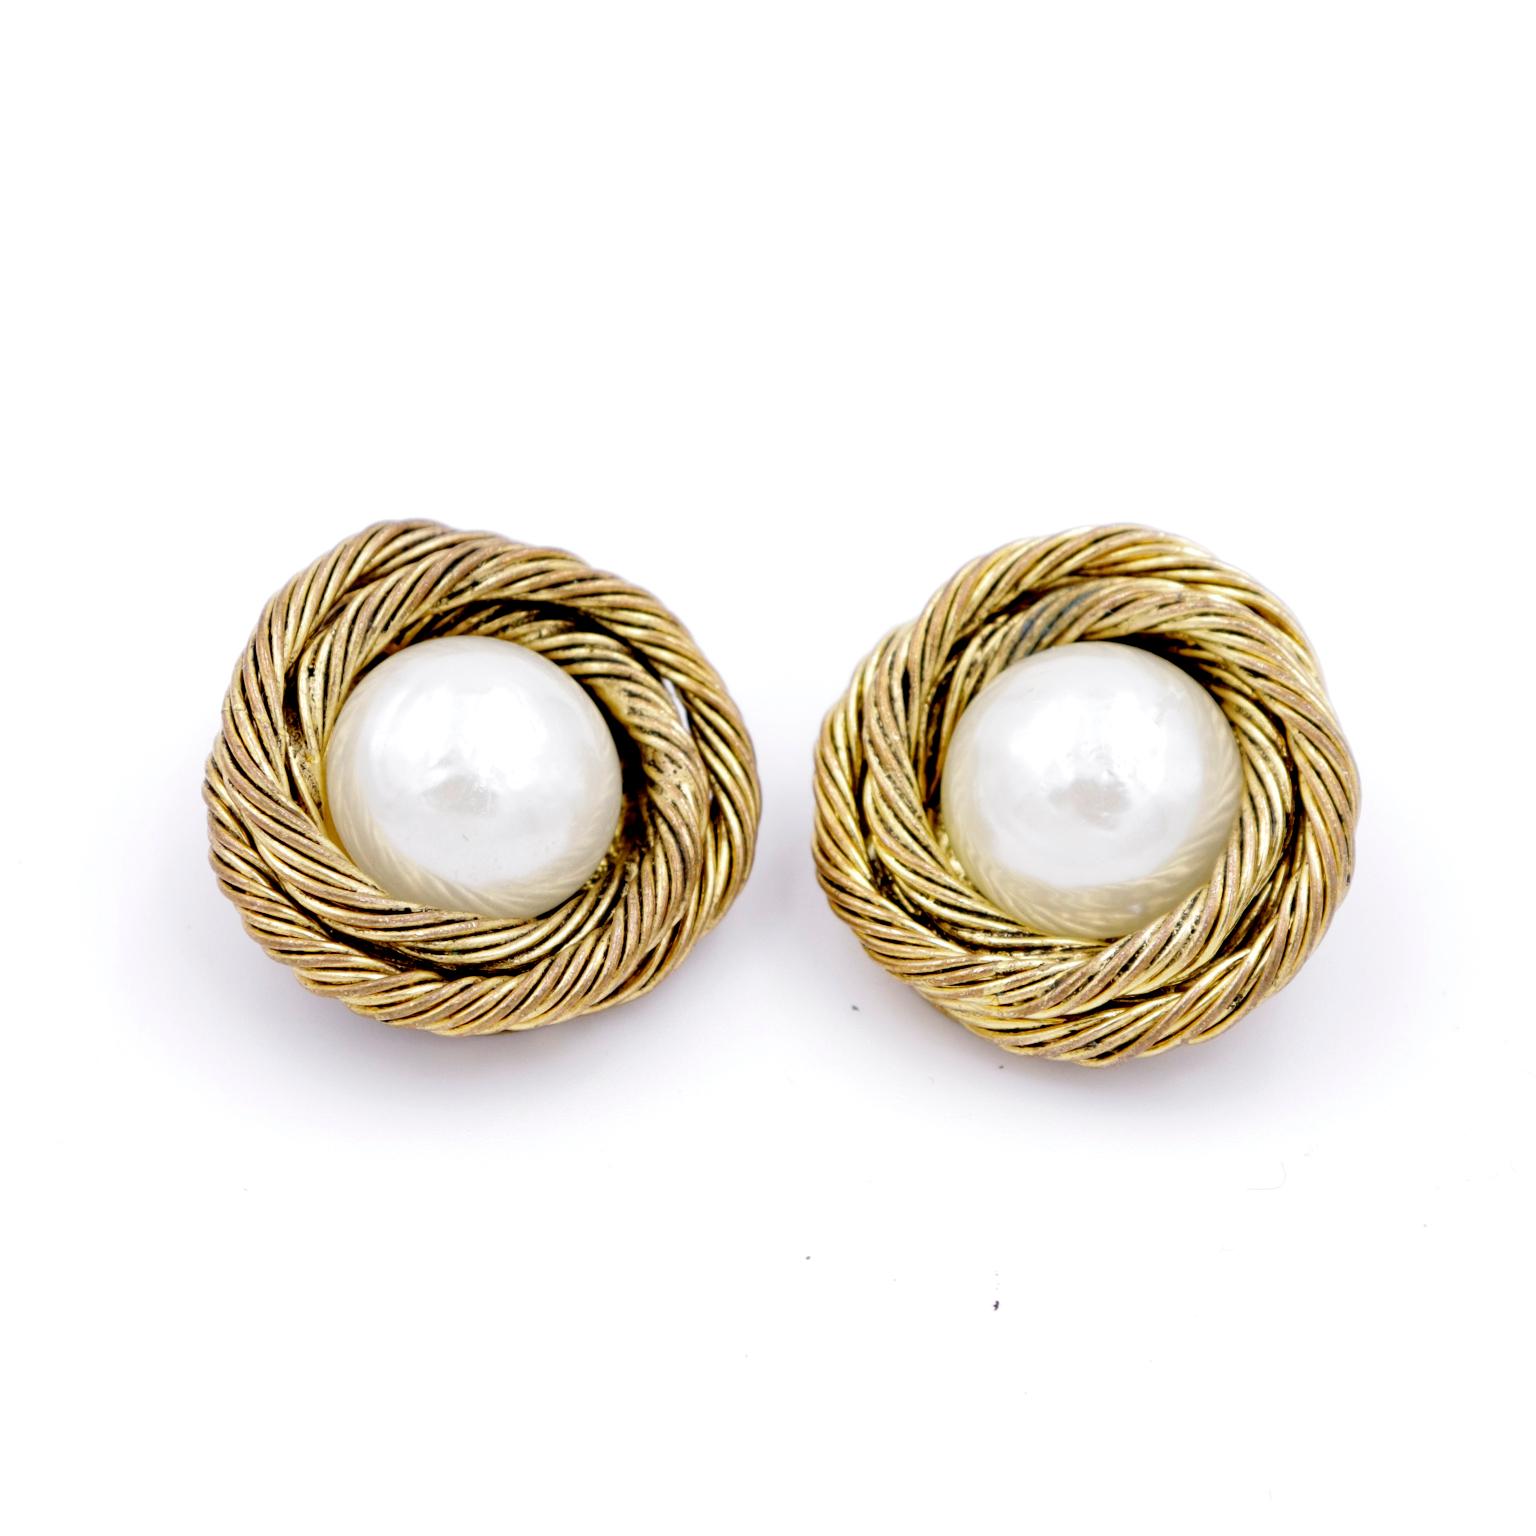 Ces boucles d'oreilles à clip vintage 1985 de Chanel en corde torsadée dorée présentent au centre un cabochon de perle simulée. Les boucles d'oreilles portent la marque Chanel de 1985 au dos et sont accompagnées de leur boîte d'origine.
LARGEUR : 1